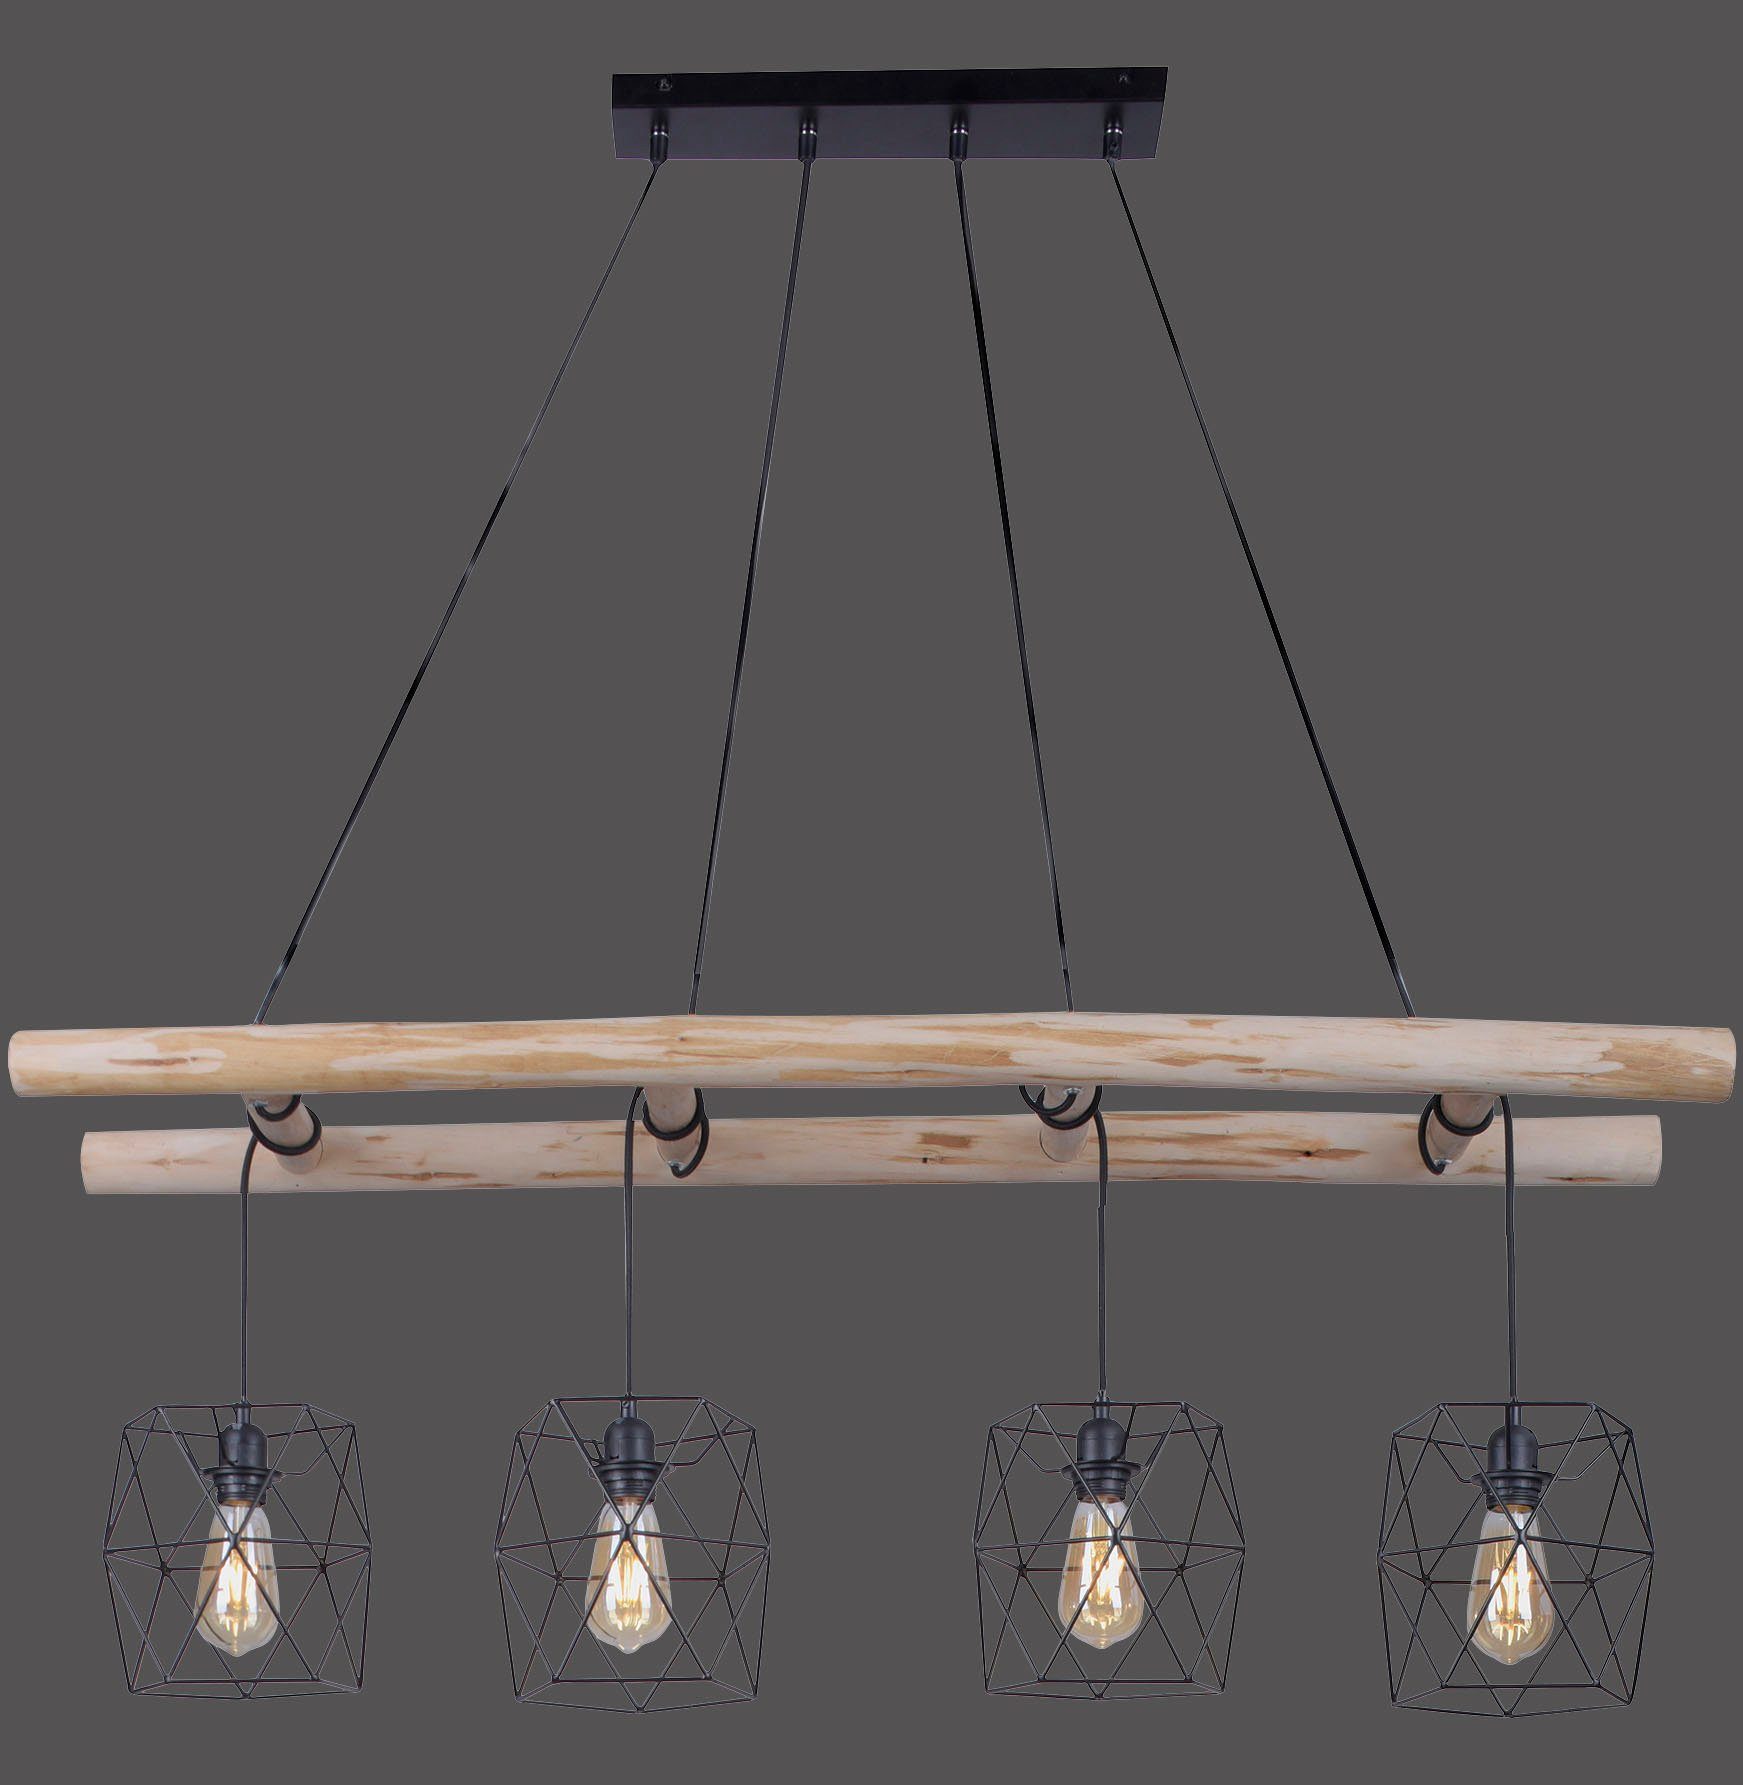 Leuchten Direkt LED ohne Kombination Leiter-Optik & Holz; Metallkörbchen lack. aus Ein-/Ausschalter, Pendelleuchte rustikalem Leuchtmittel, EDGAR